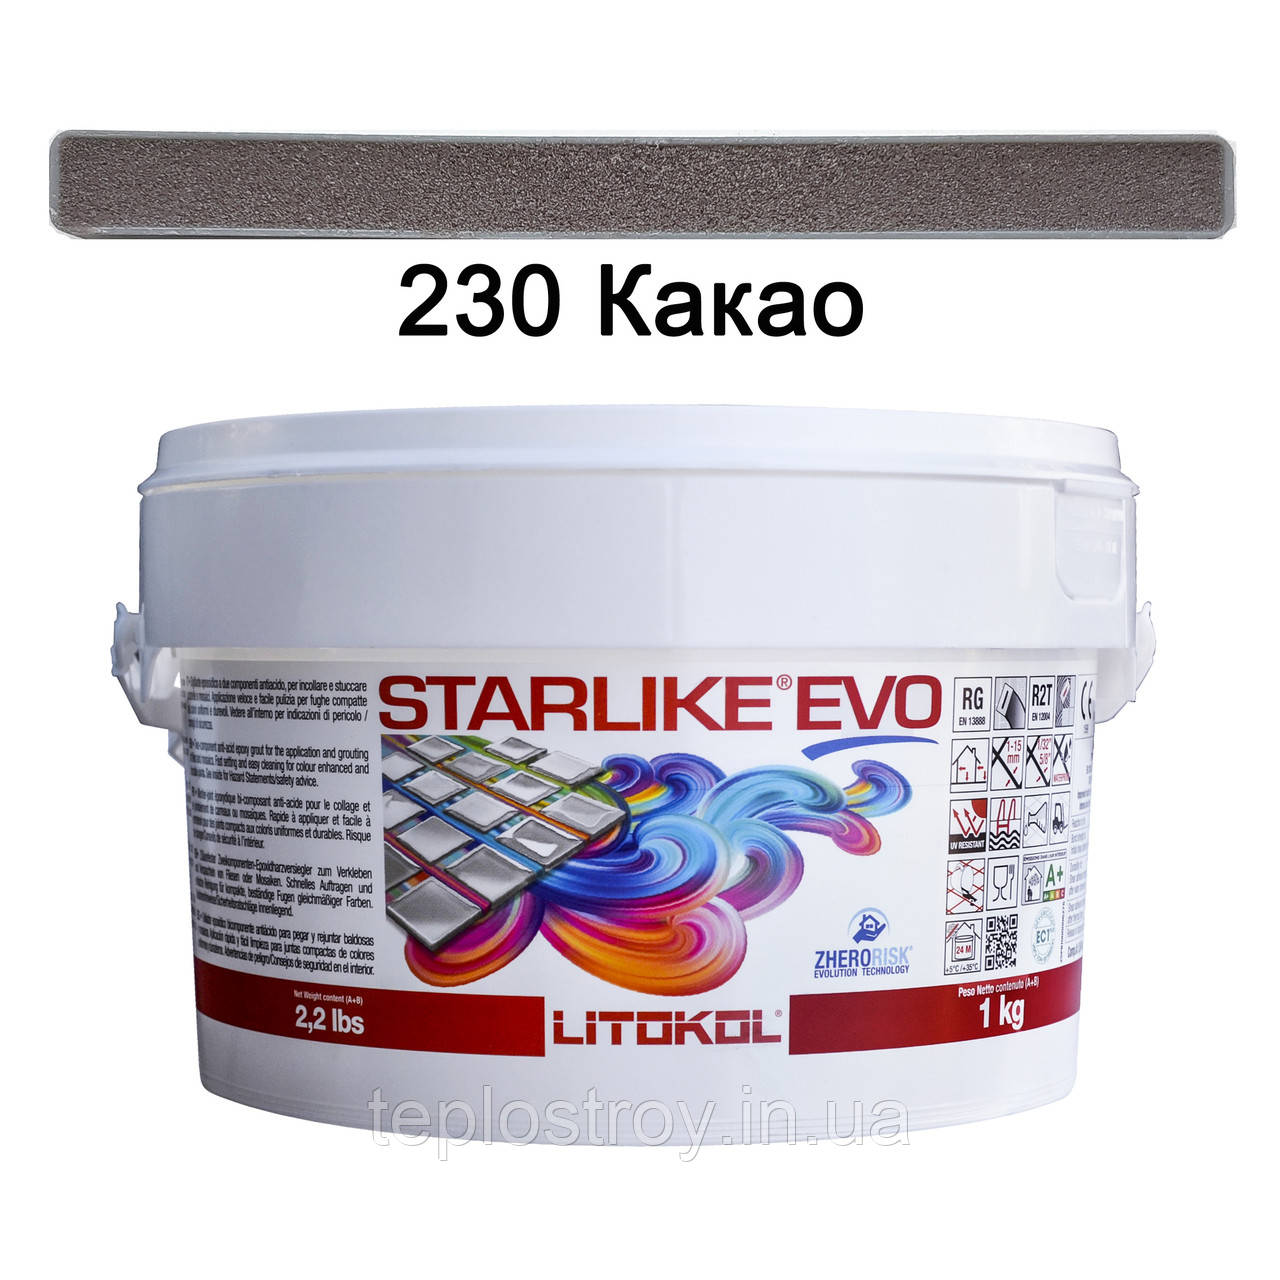 Епоксидна затирка Litokol Starlike EVO 230 (Какао) CLASS WARM COLLECTION, 1 кг, фото 1